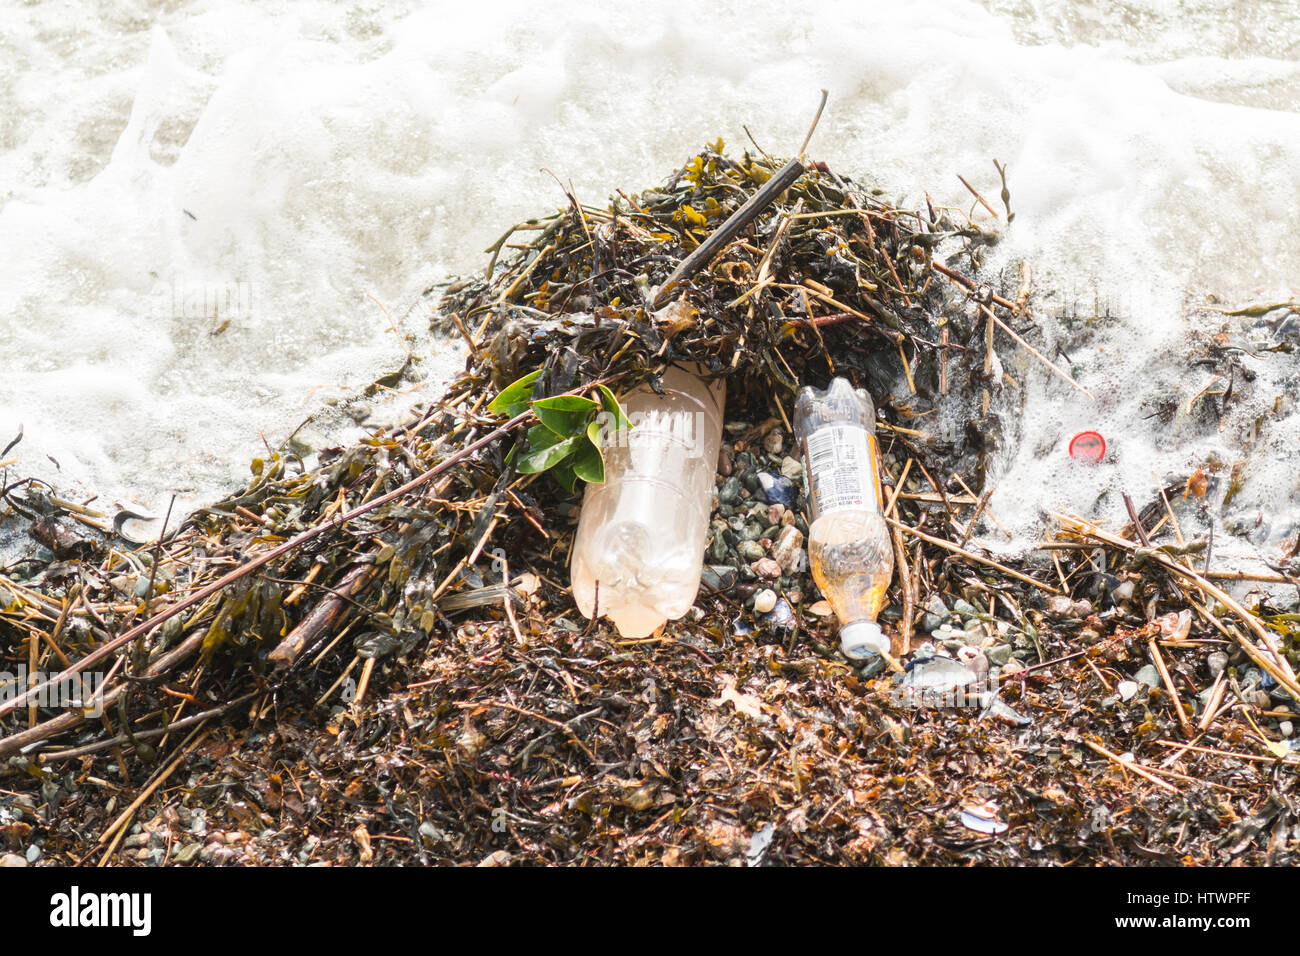 Les bouteilles en plastique de l'irn bru échoués sur la plage de l'estuaire de la Clyde Banque D'Images